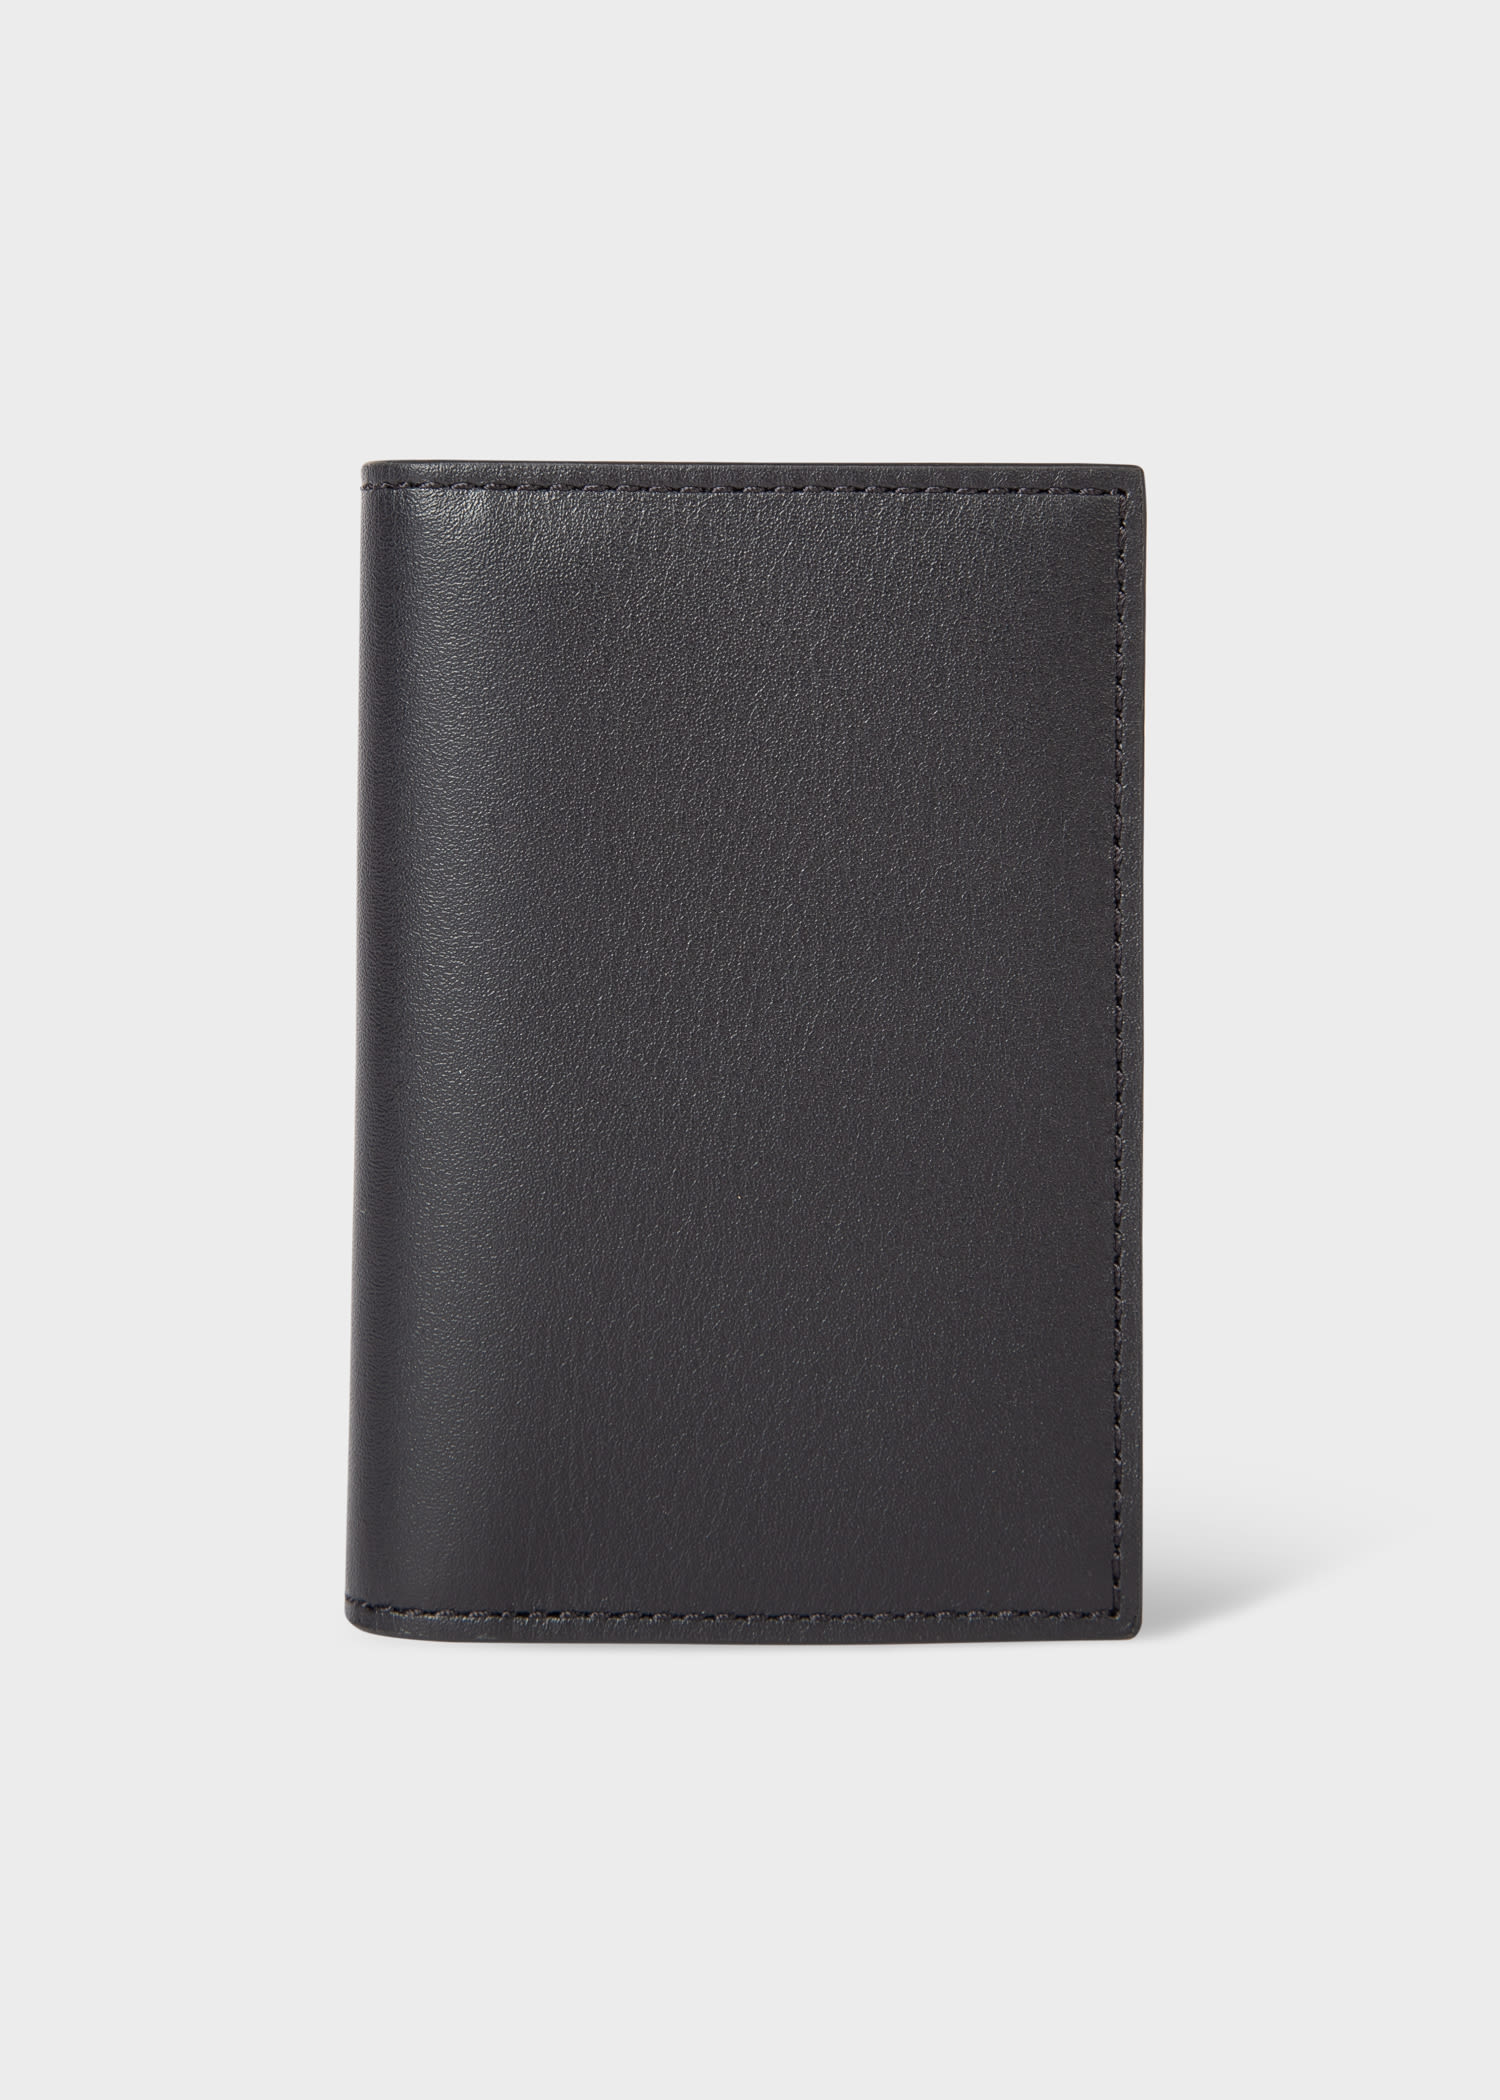 Black Leather Monogrammed Credit Card Wallet